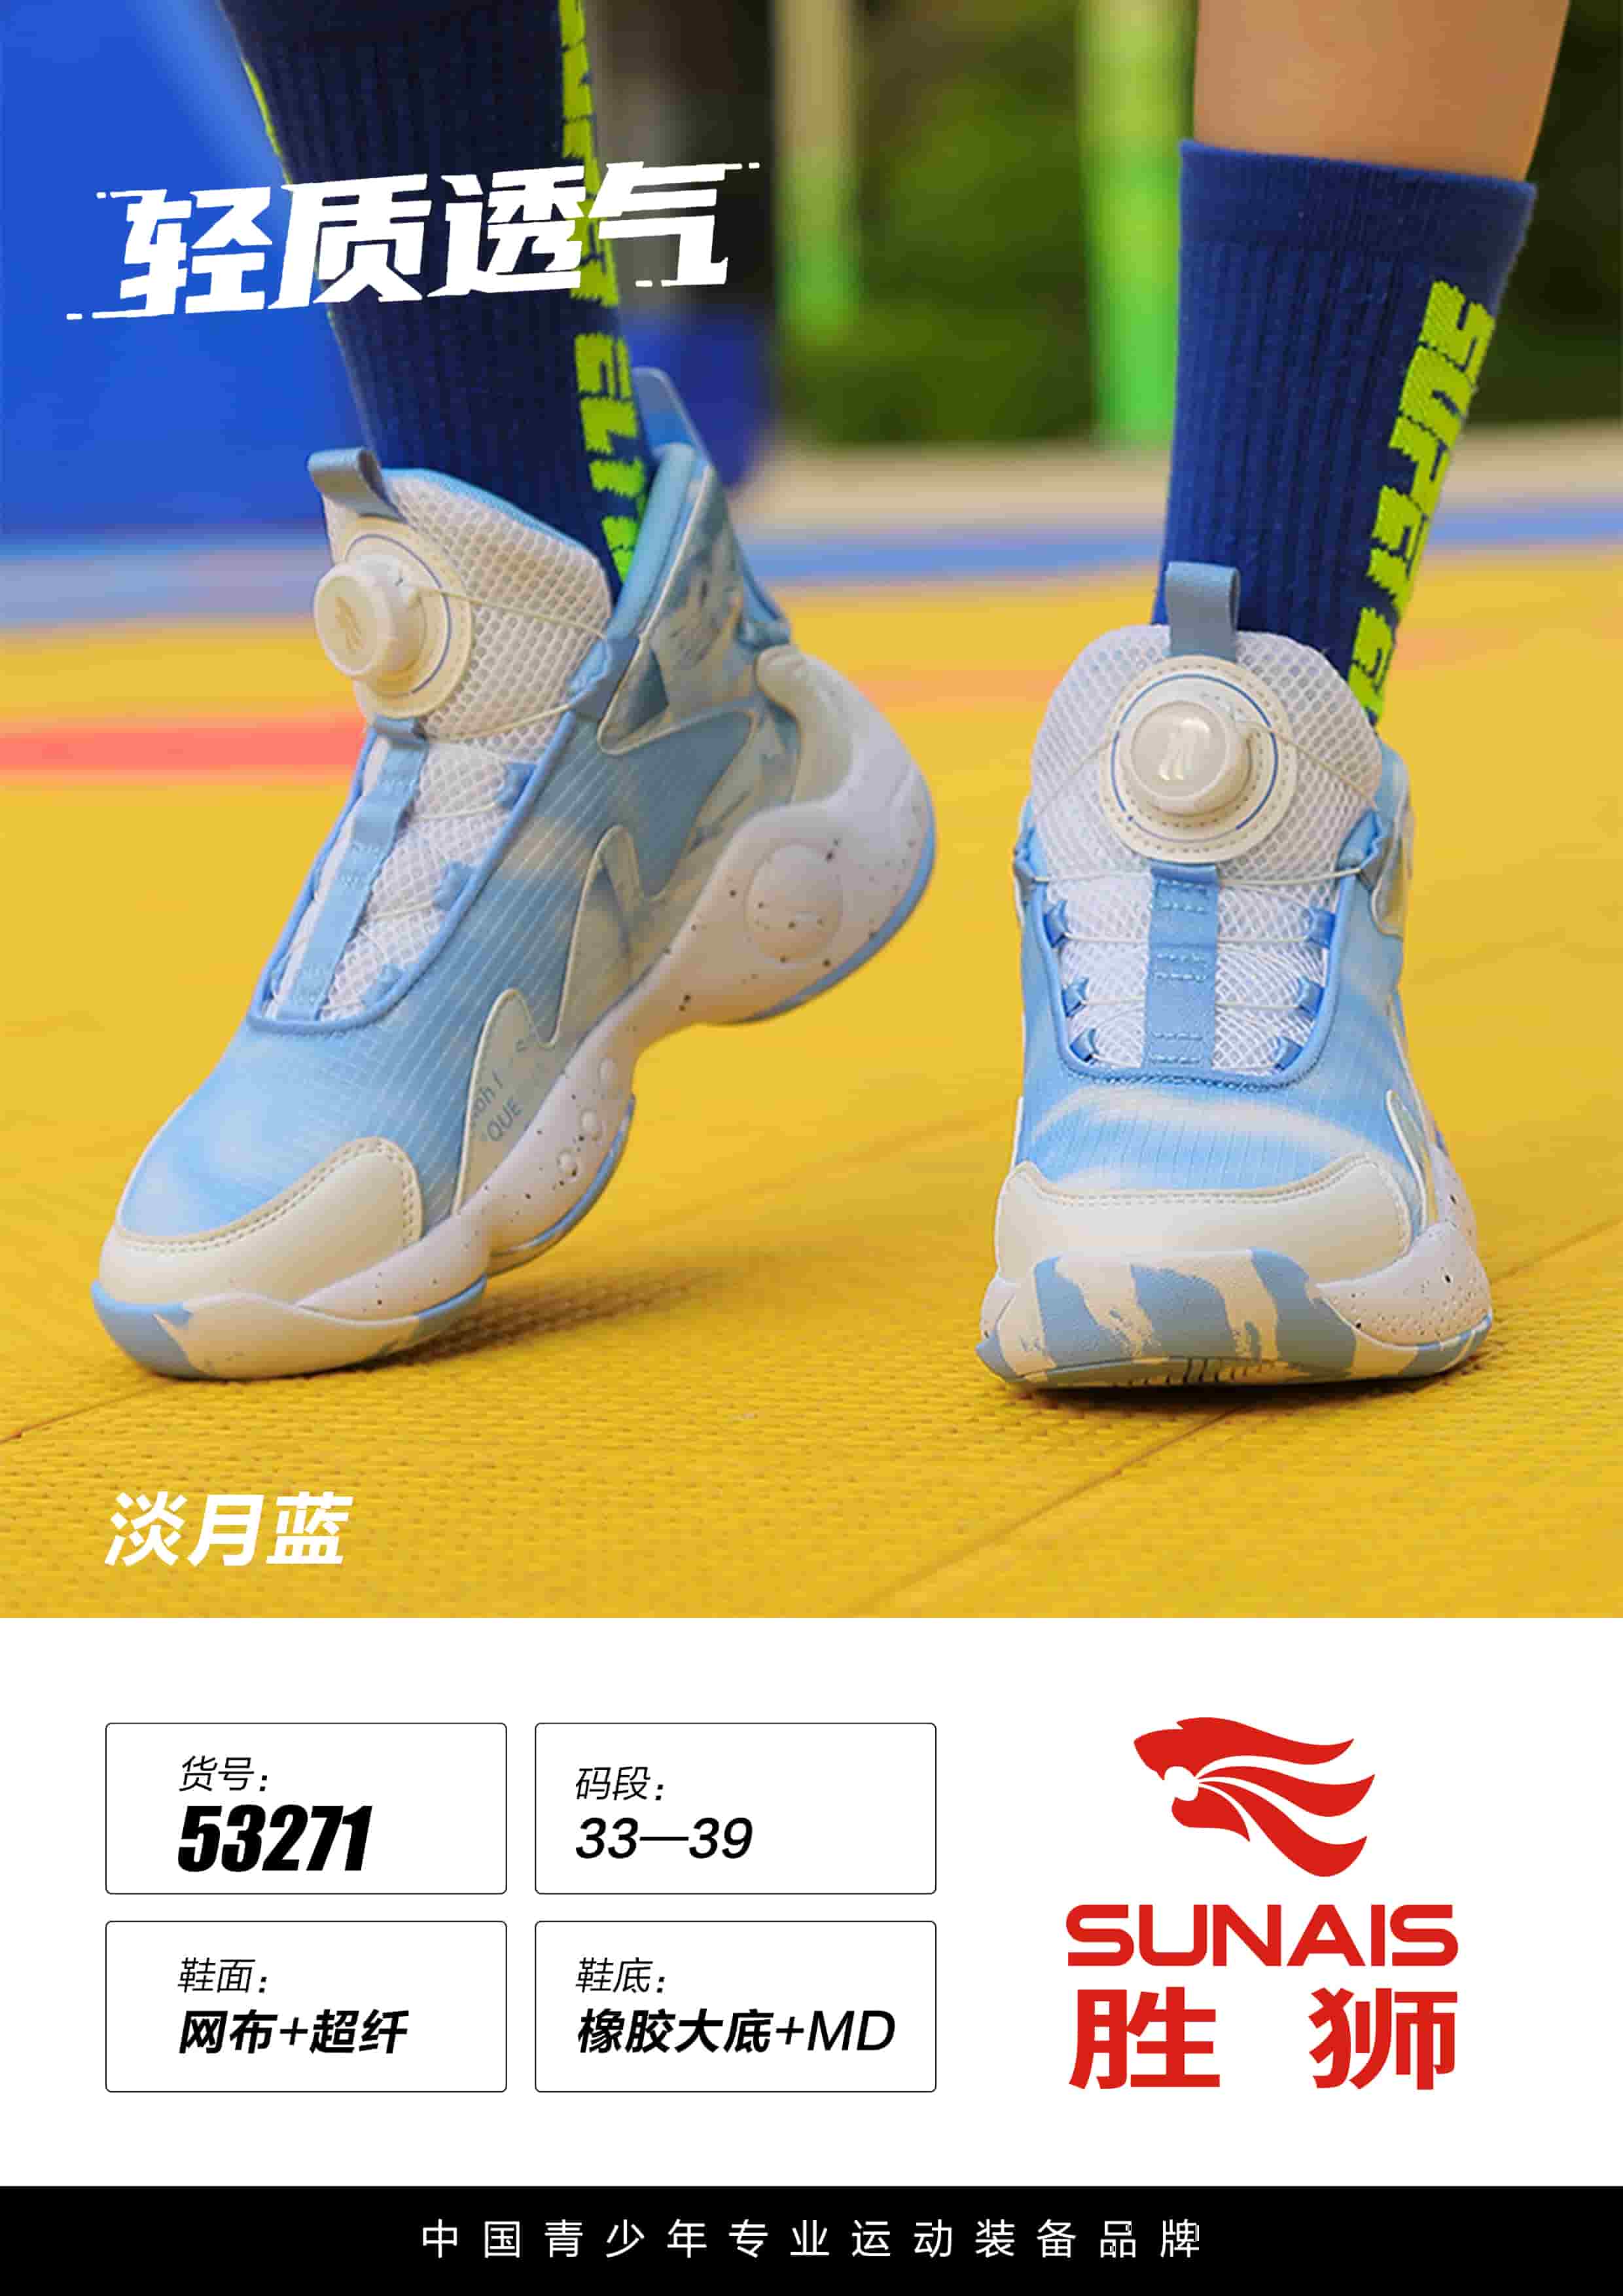 胜狮SUNAIS 舒莱狮篮球鞋体育生青少年篮球鞋 运动鞋 53271 淡月蓝